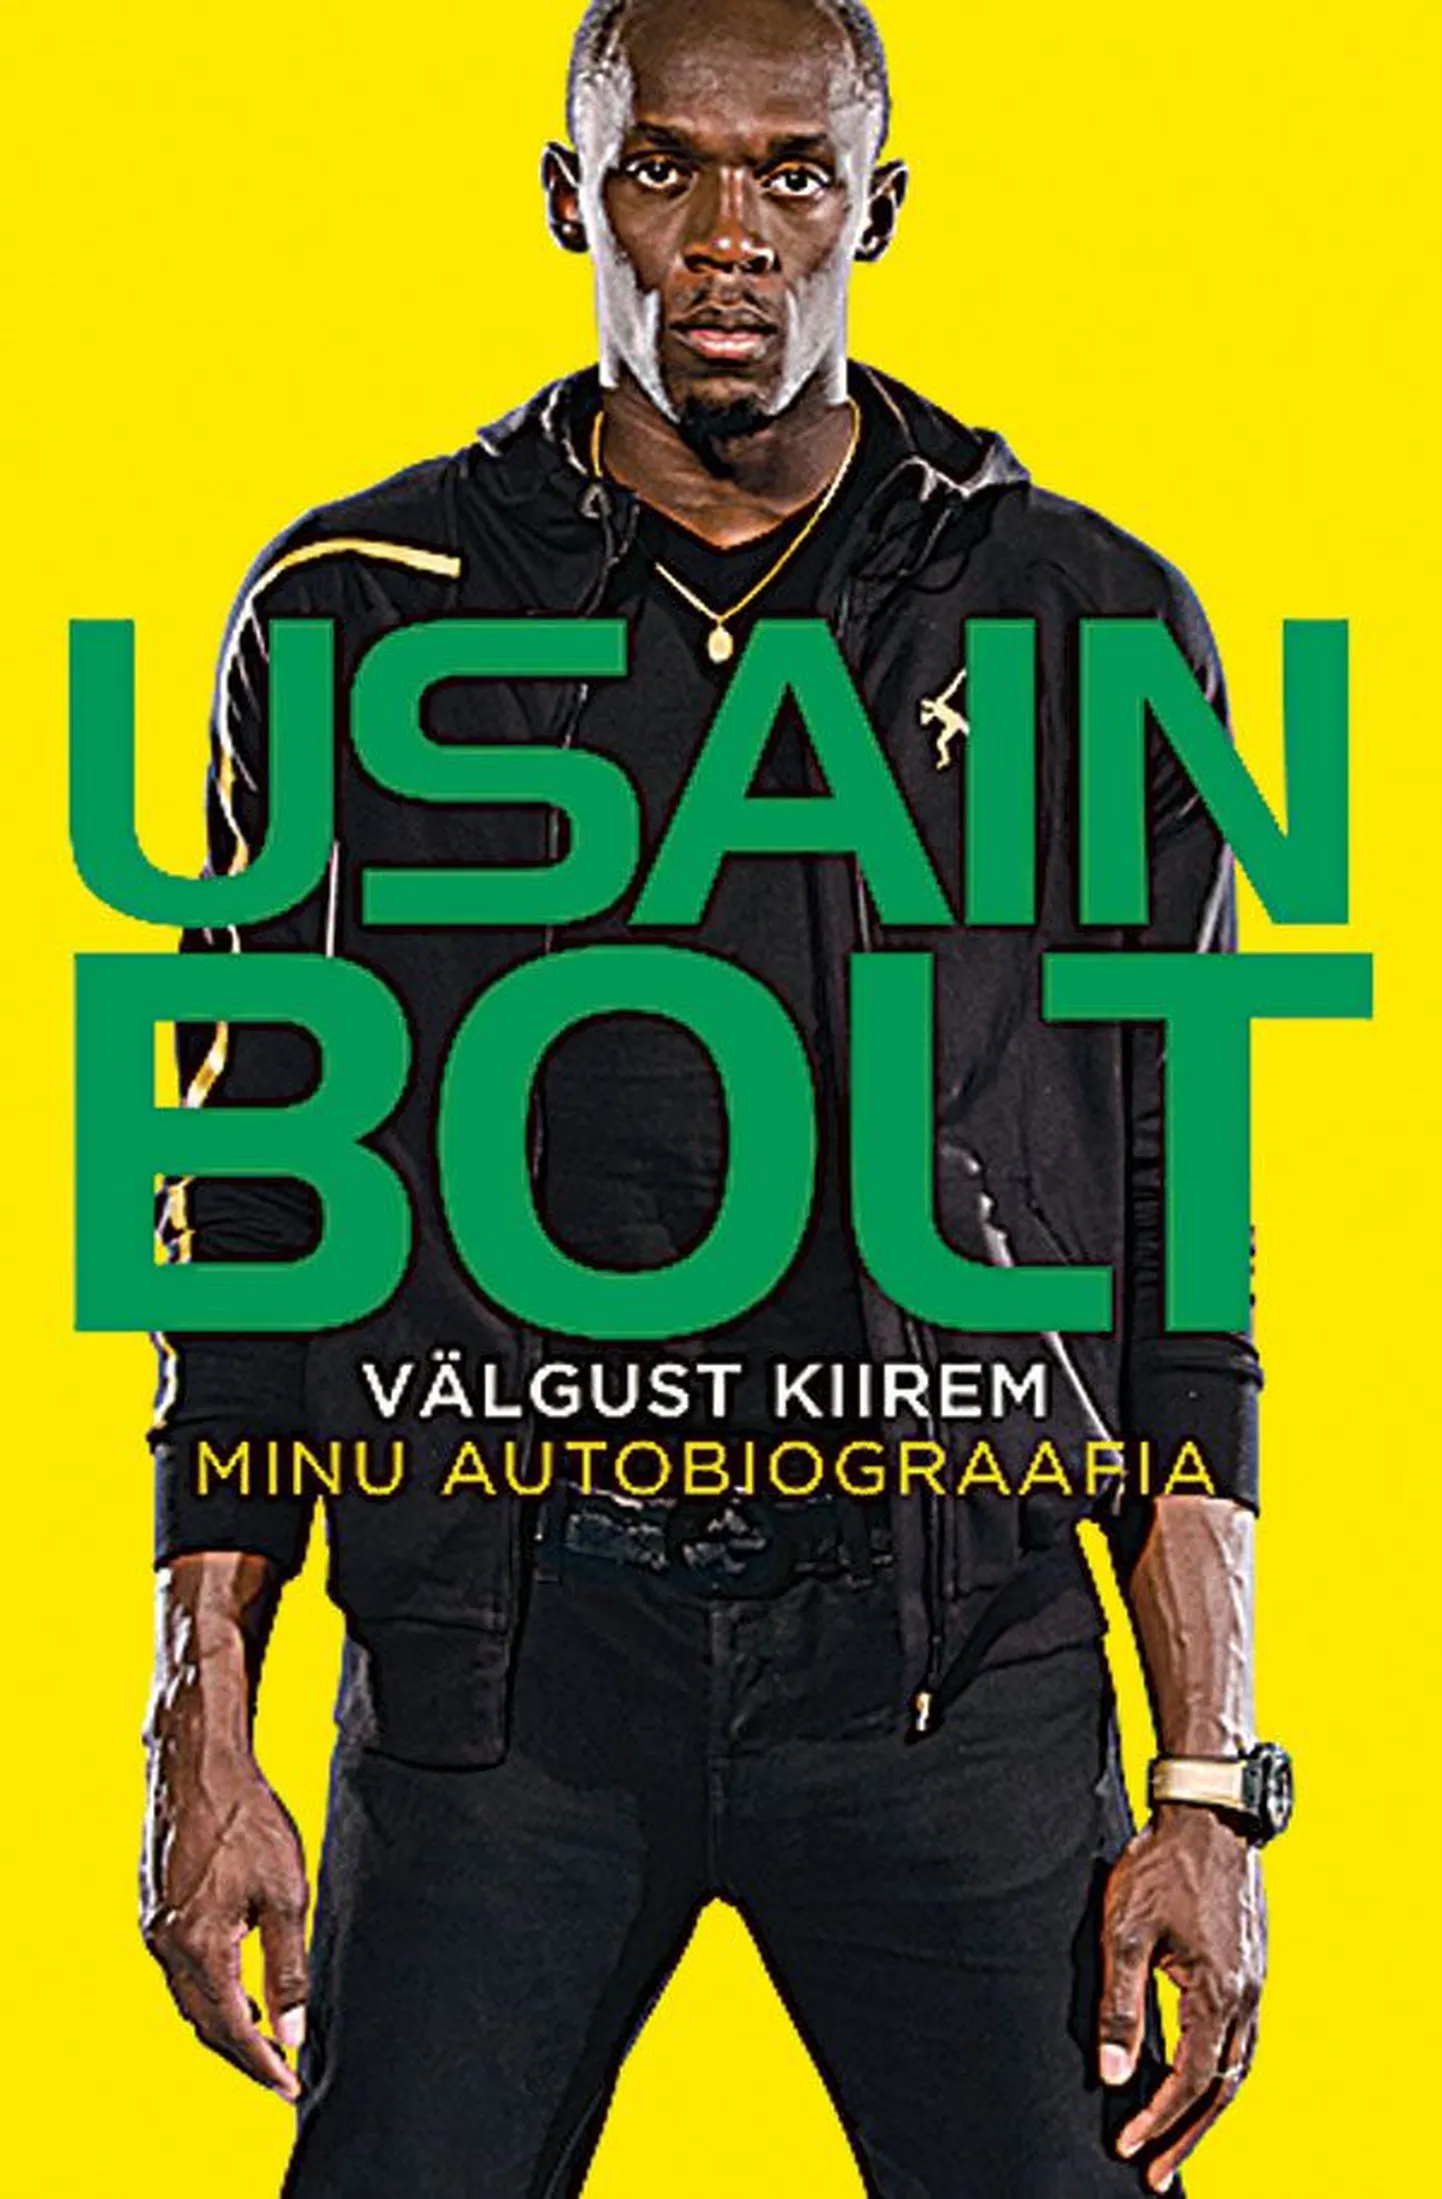 Usain Bolt ja Matt Allen 
«Välgust kiirem»
tõlkinud Eva Pettai, 
Helios, 274 lk